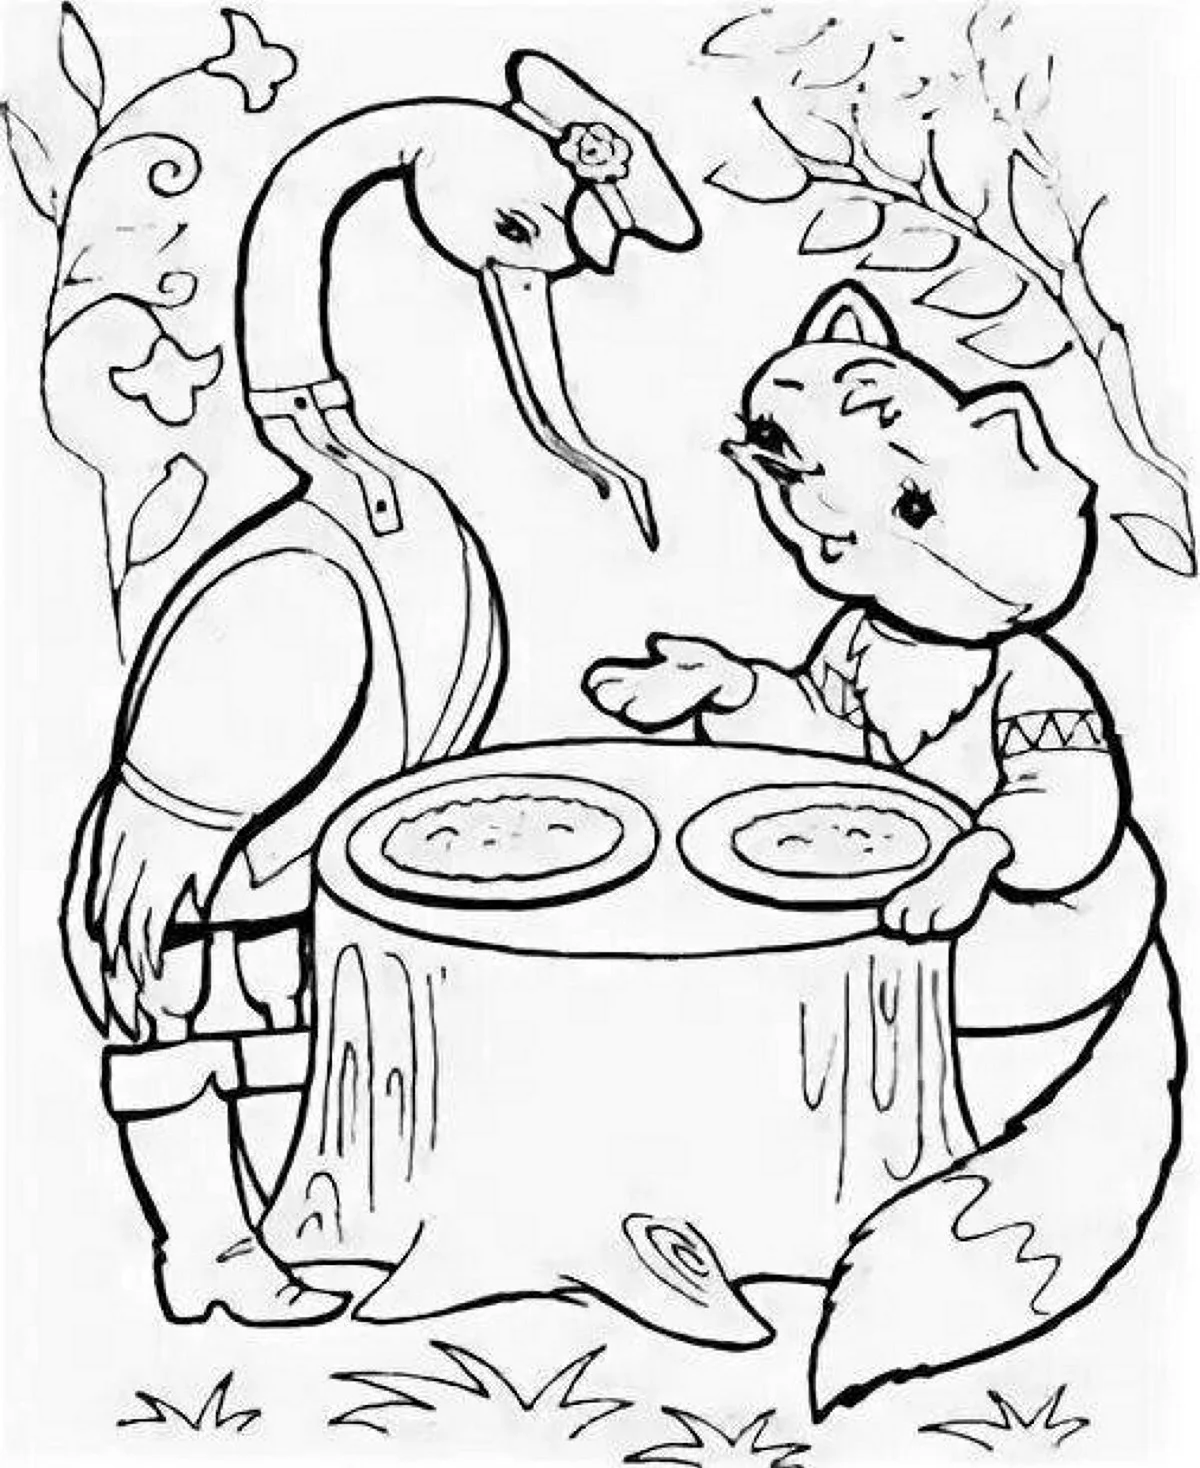 Иллюстрация к сказке лиса и журавль раскраска